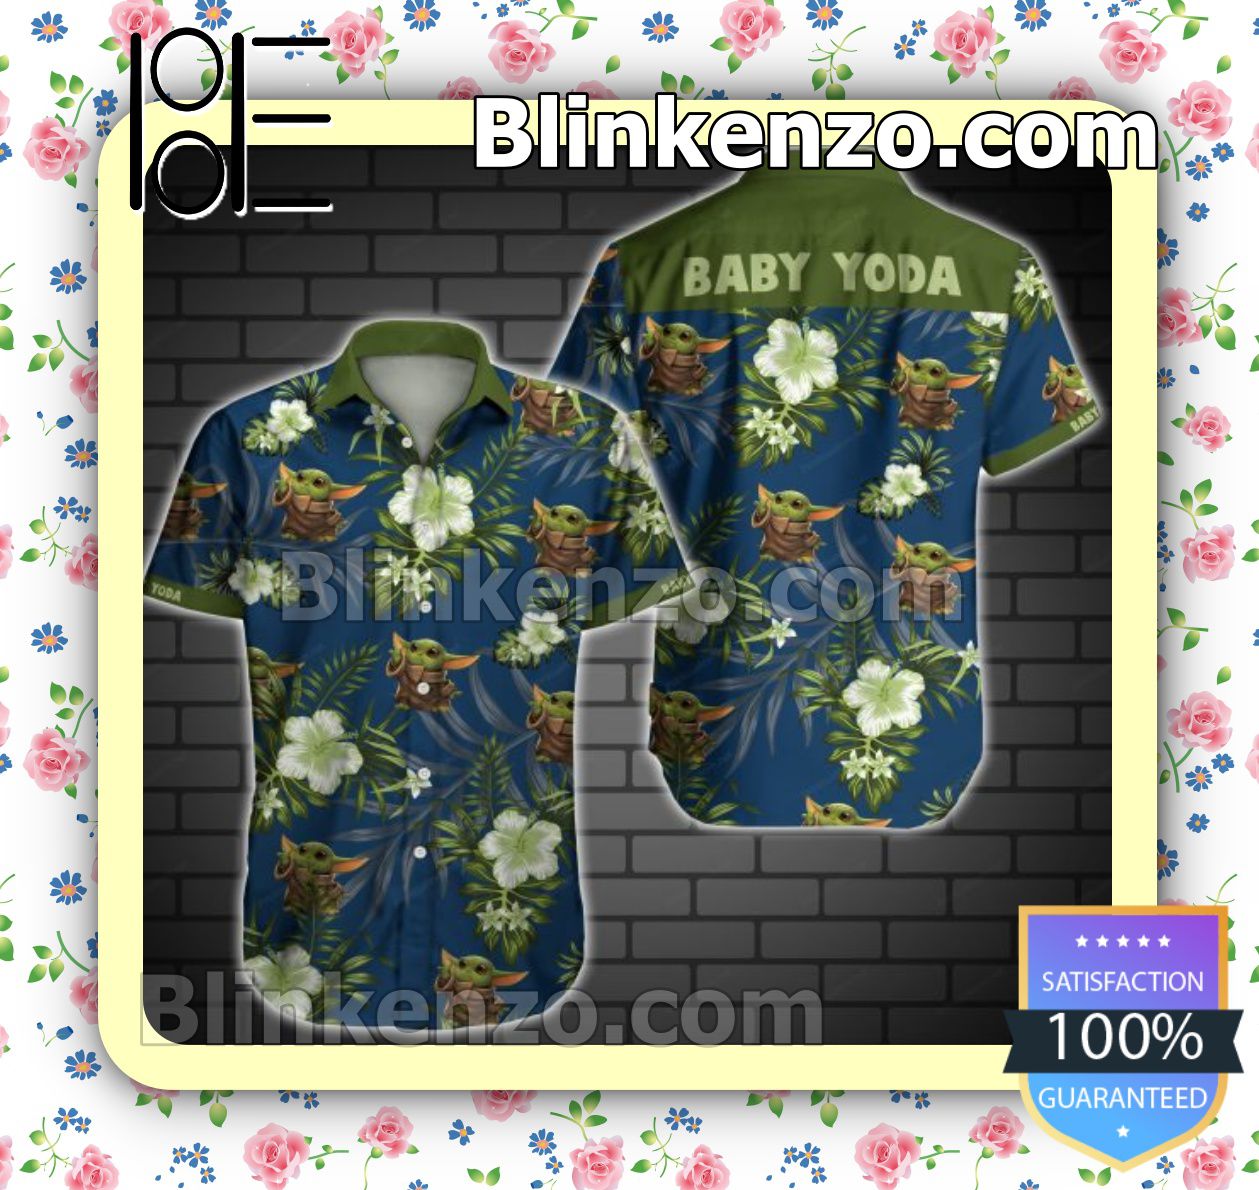 Baby Yoda Green Tropical Floral Navy Summer Shirts